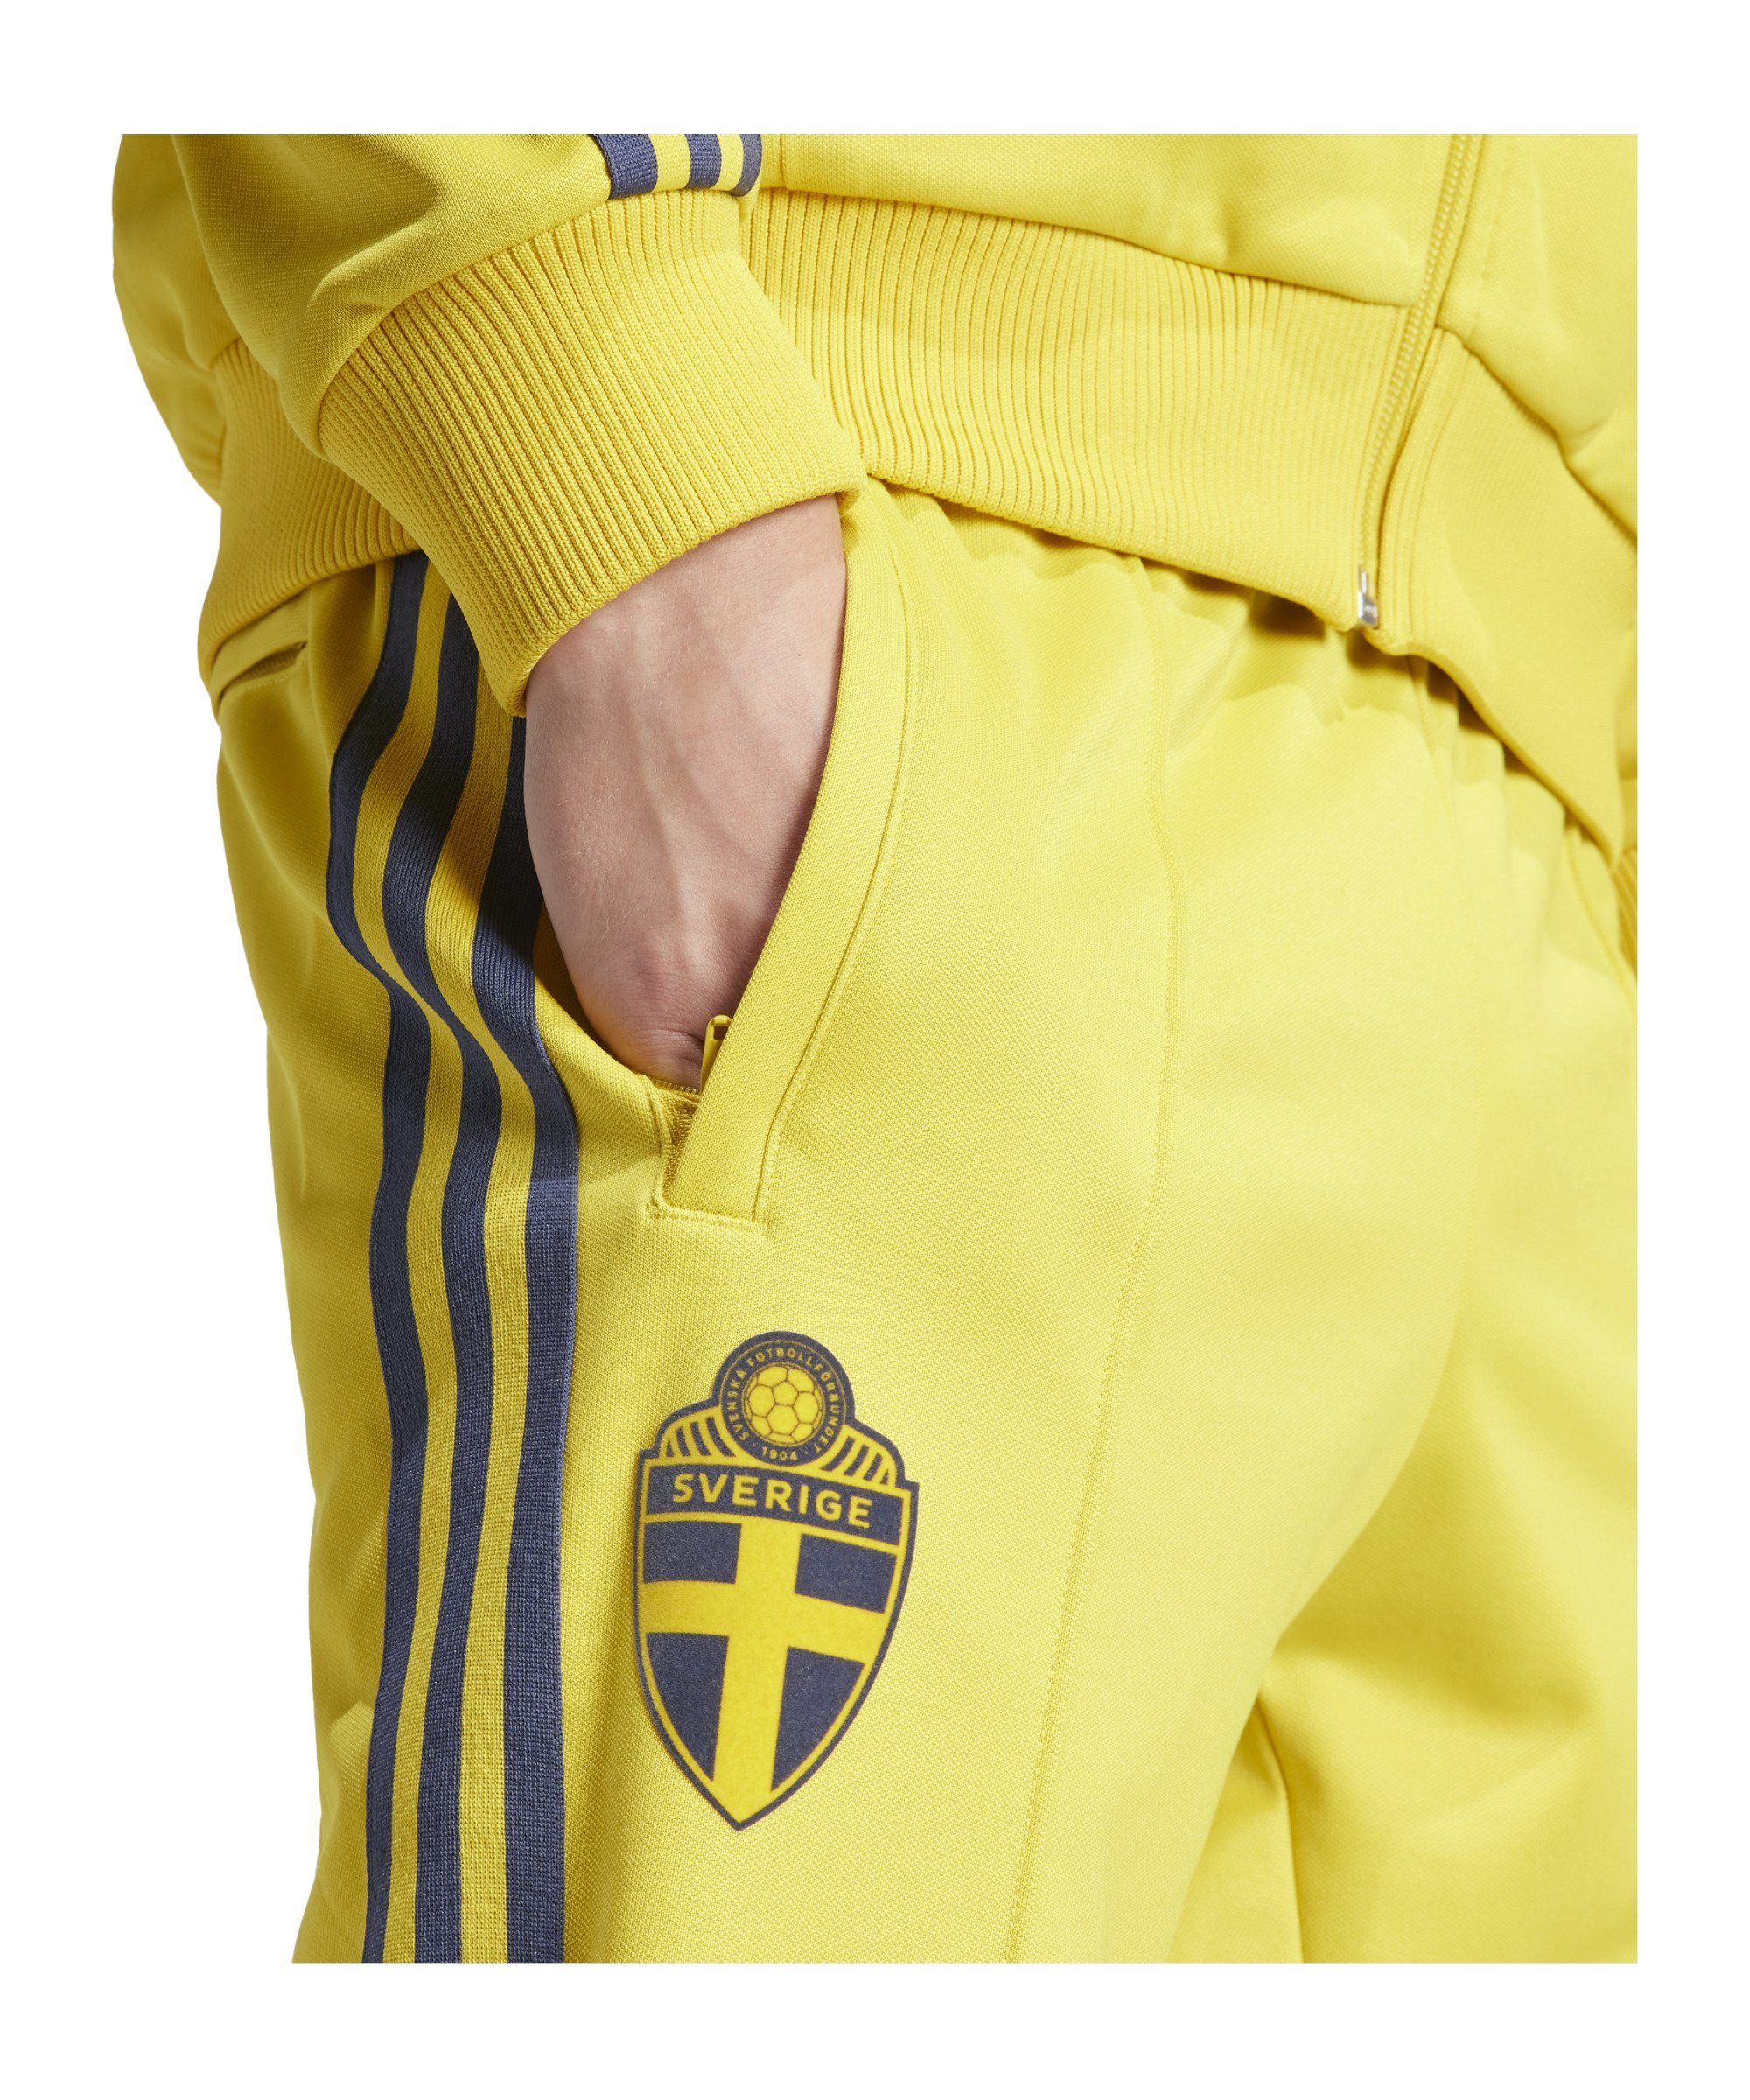 Originals Sporthose adidas Schweden Trainingshose